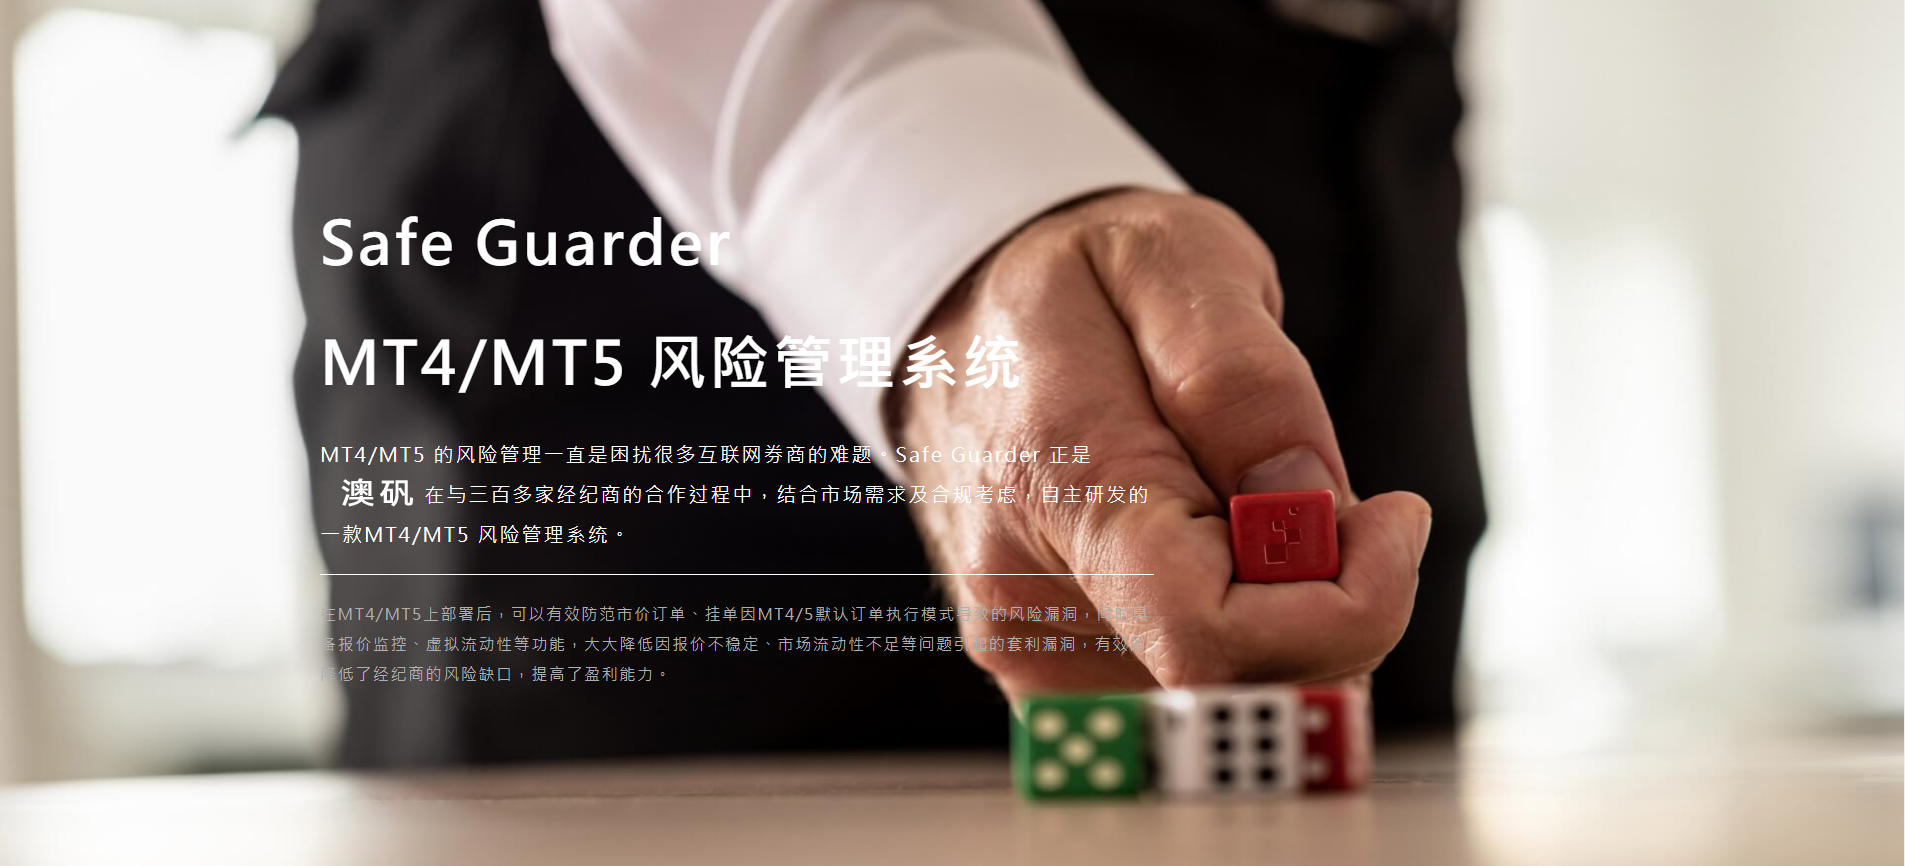 MT4/MT5 风险管理系统